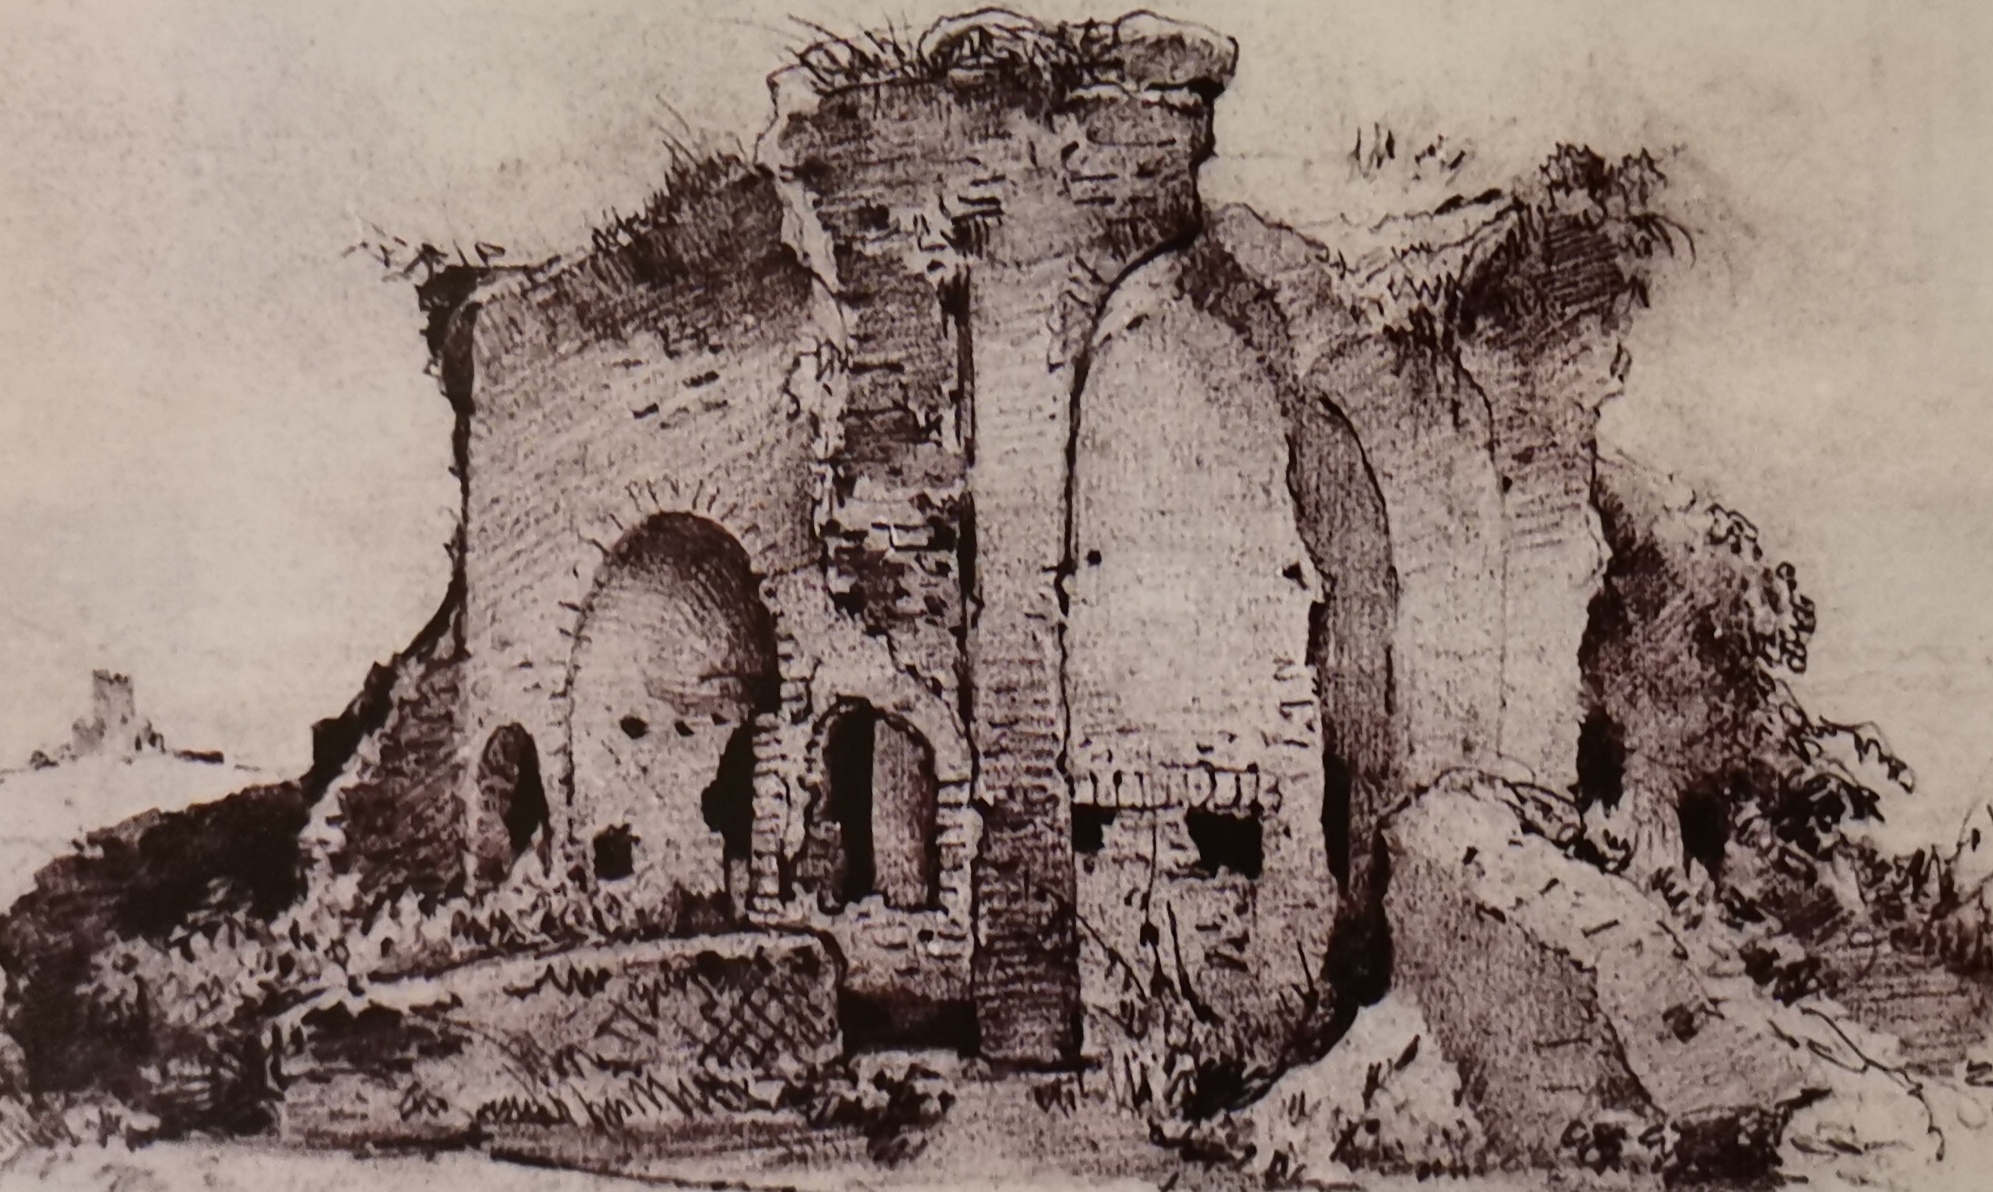 Disegno di Pasquale Mattej del 1845, raffigurante il cosiddetto "Tempio di Giano" nel 1847